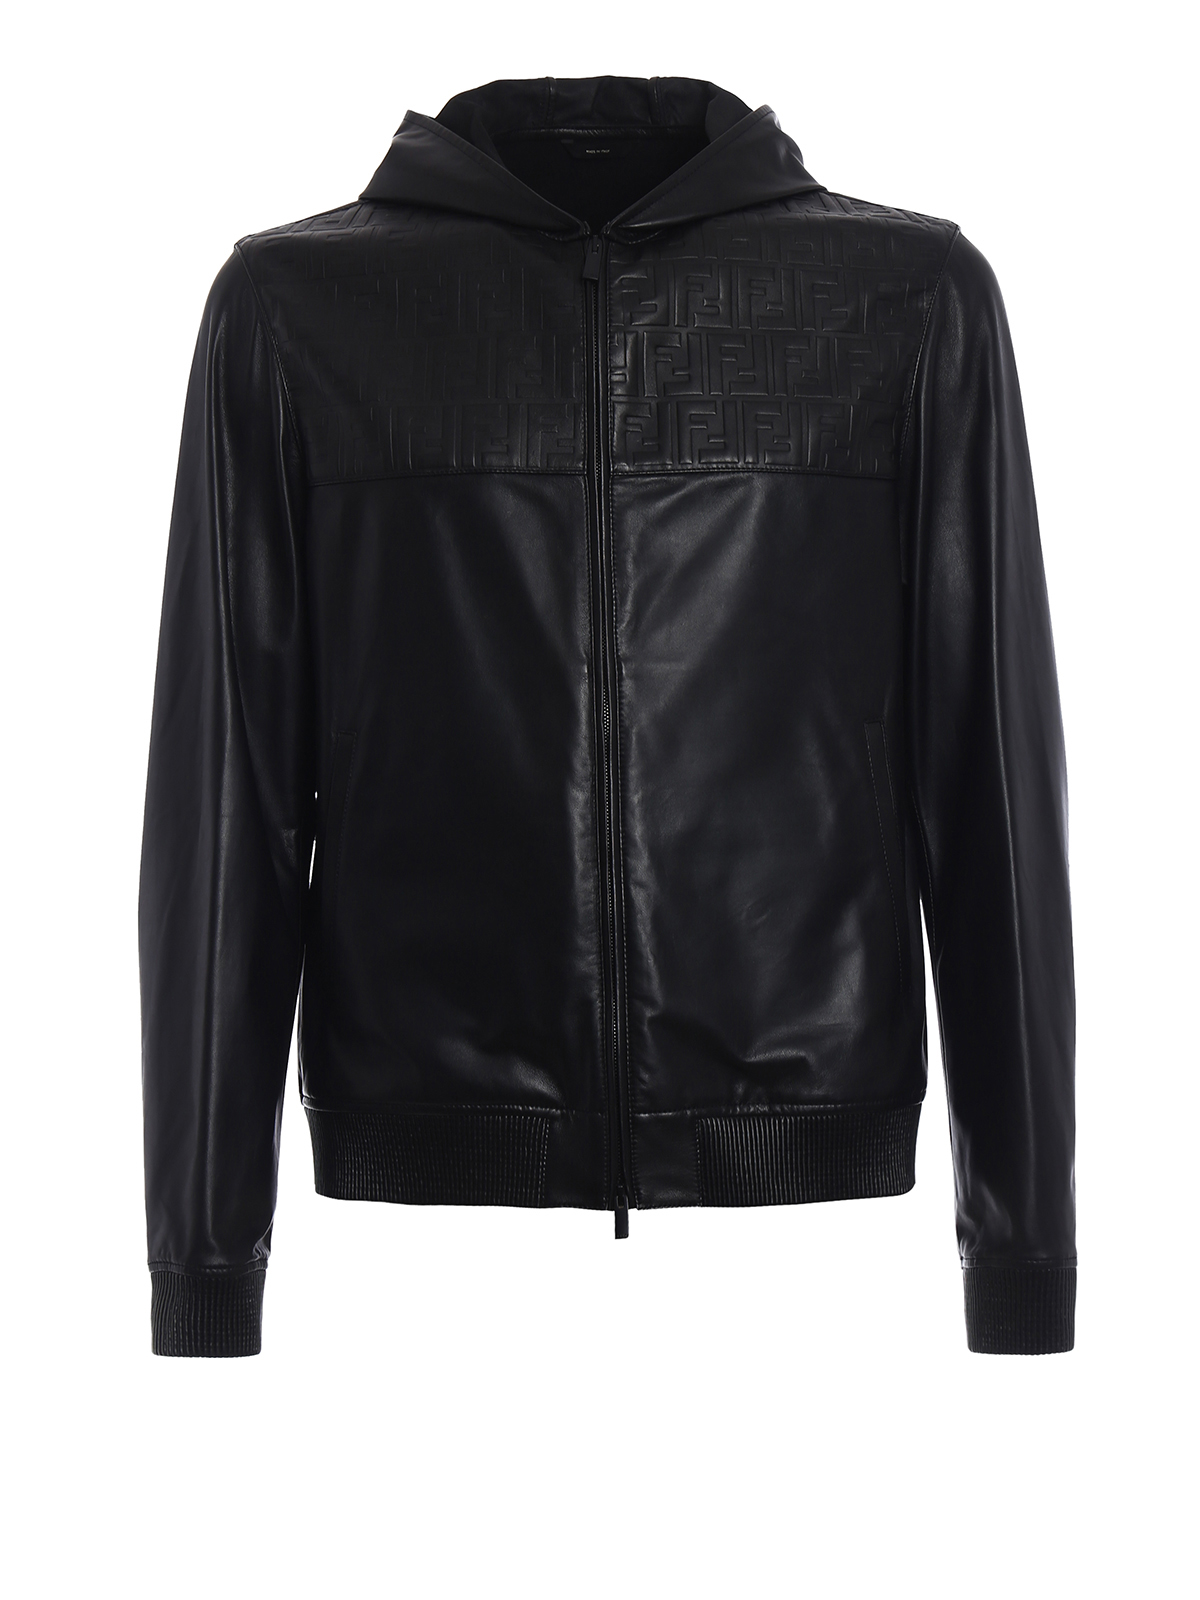 Leather jacket Fendi - Light leather unlined jacket - FPG455A2RKF0QA1